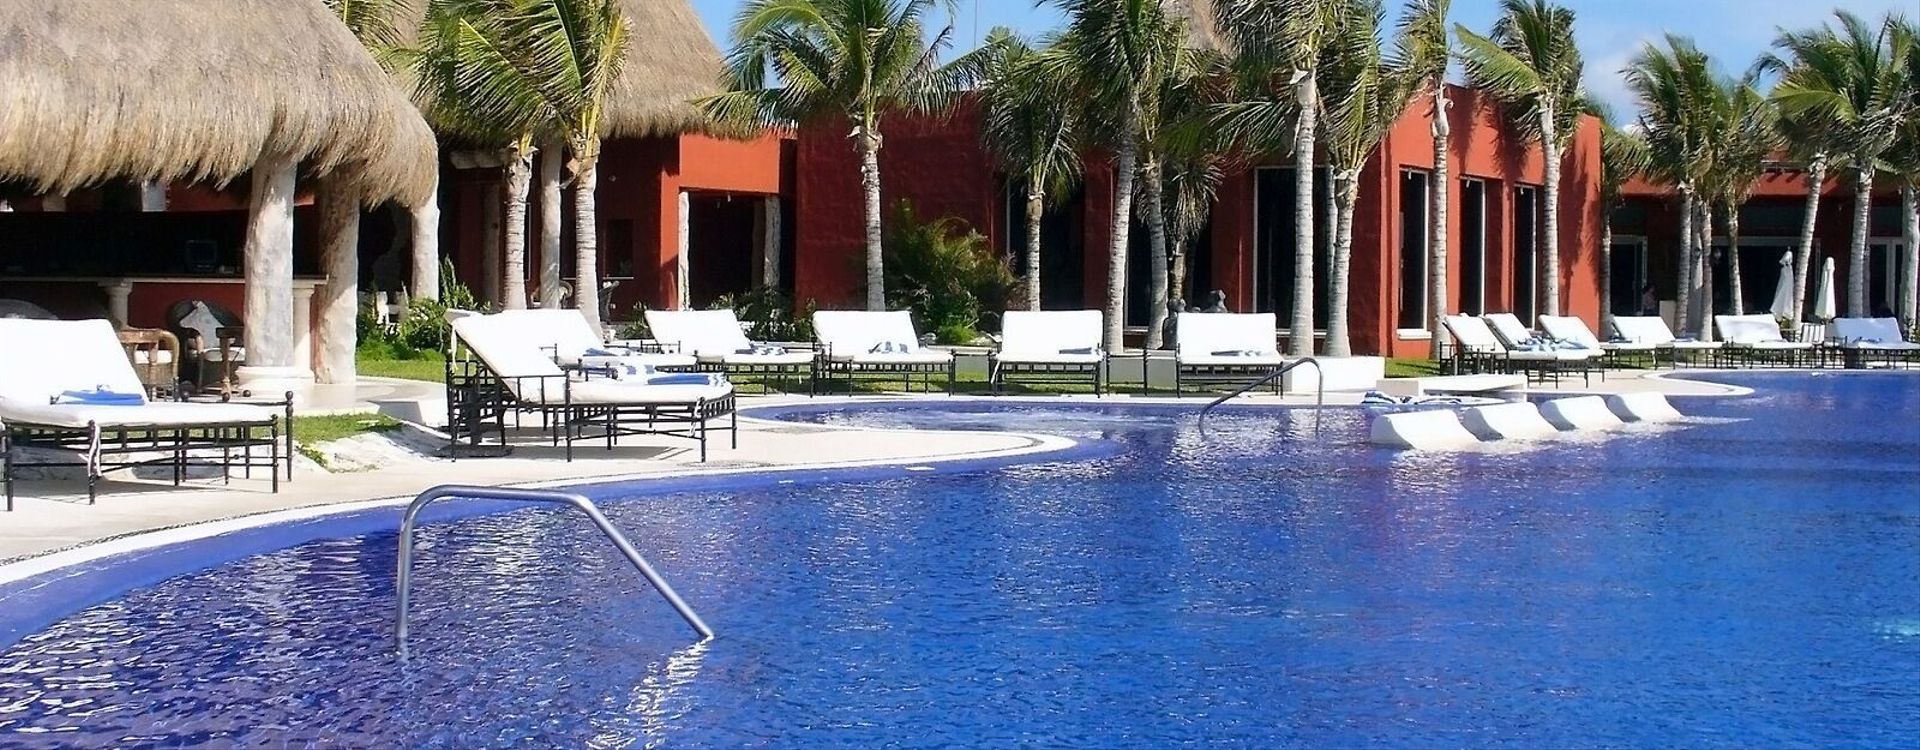 Zoëtry Paraiso de la Bonita Riviera Maya-Pool 2.jpg